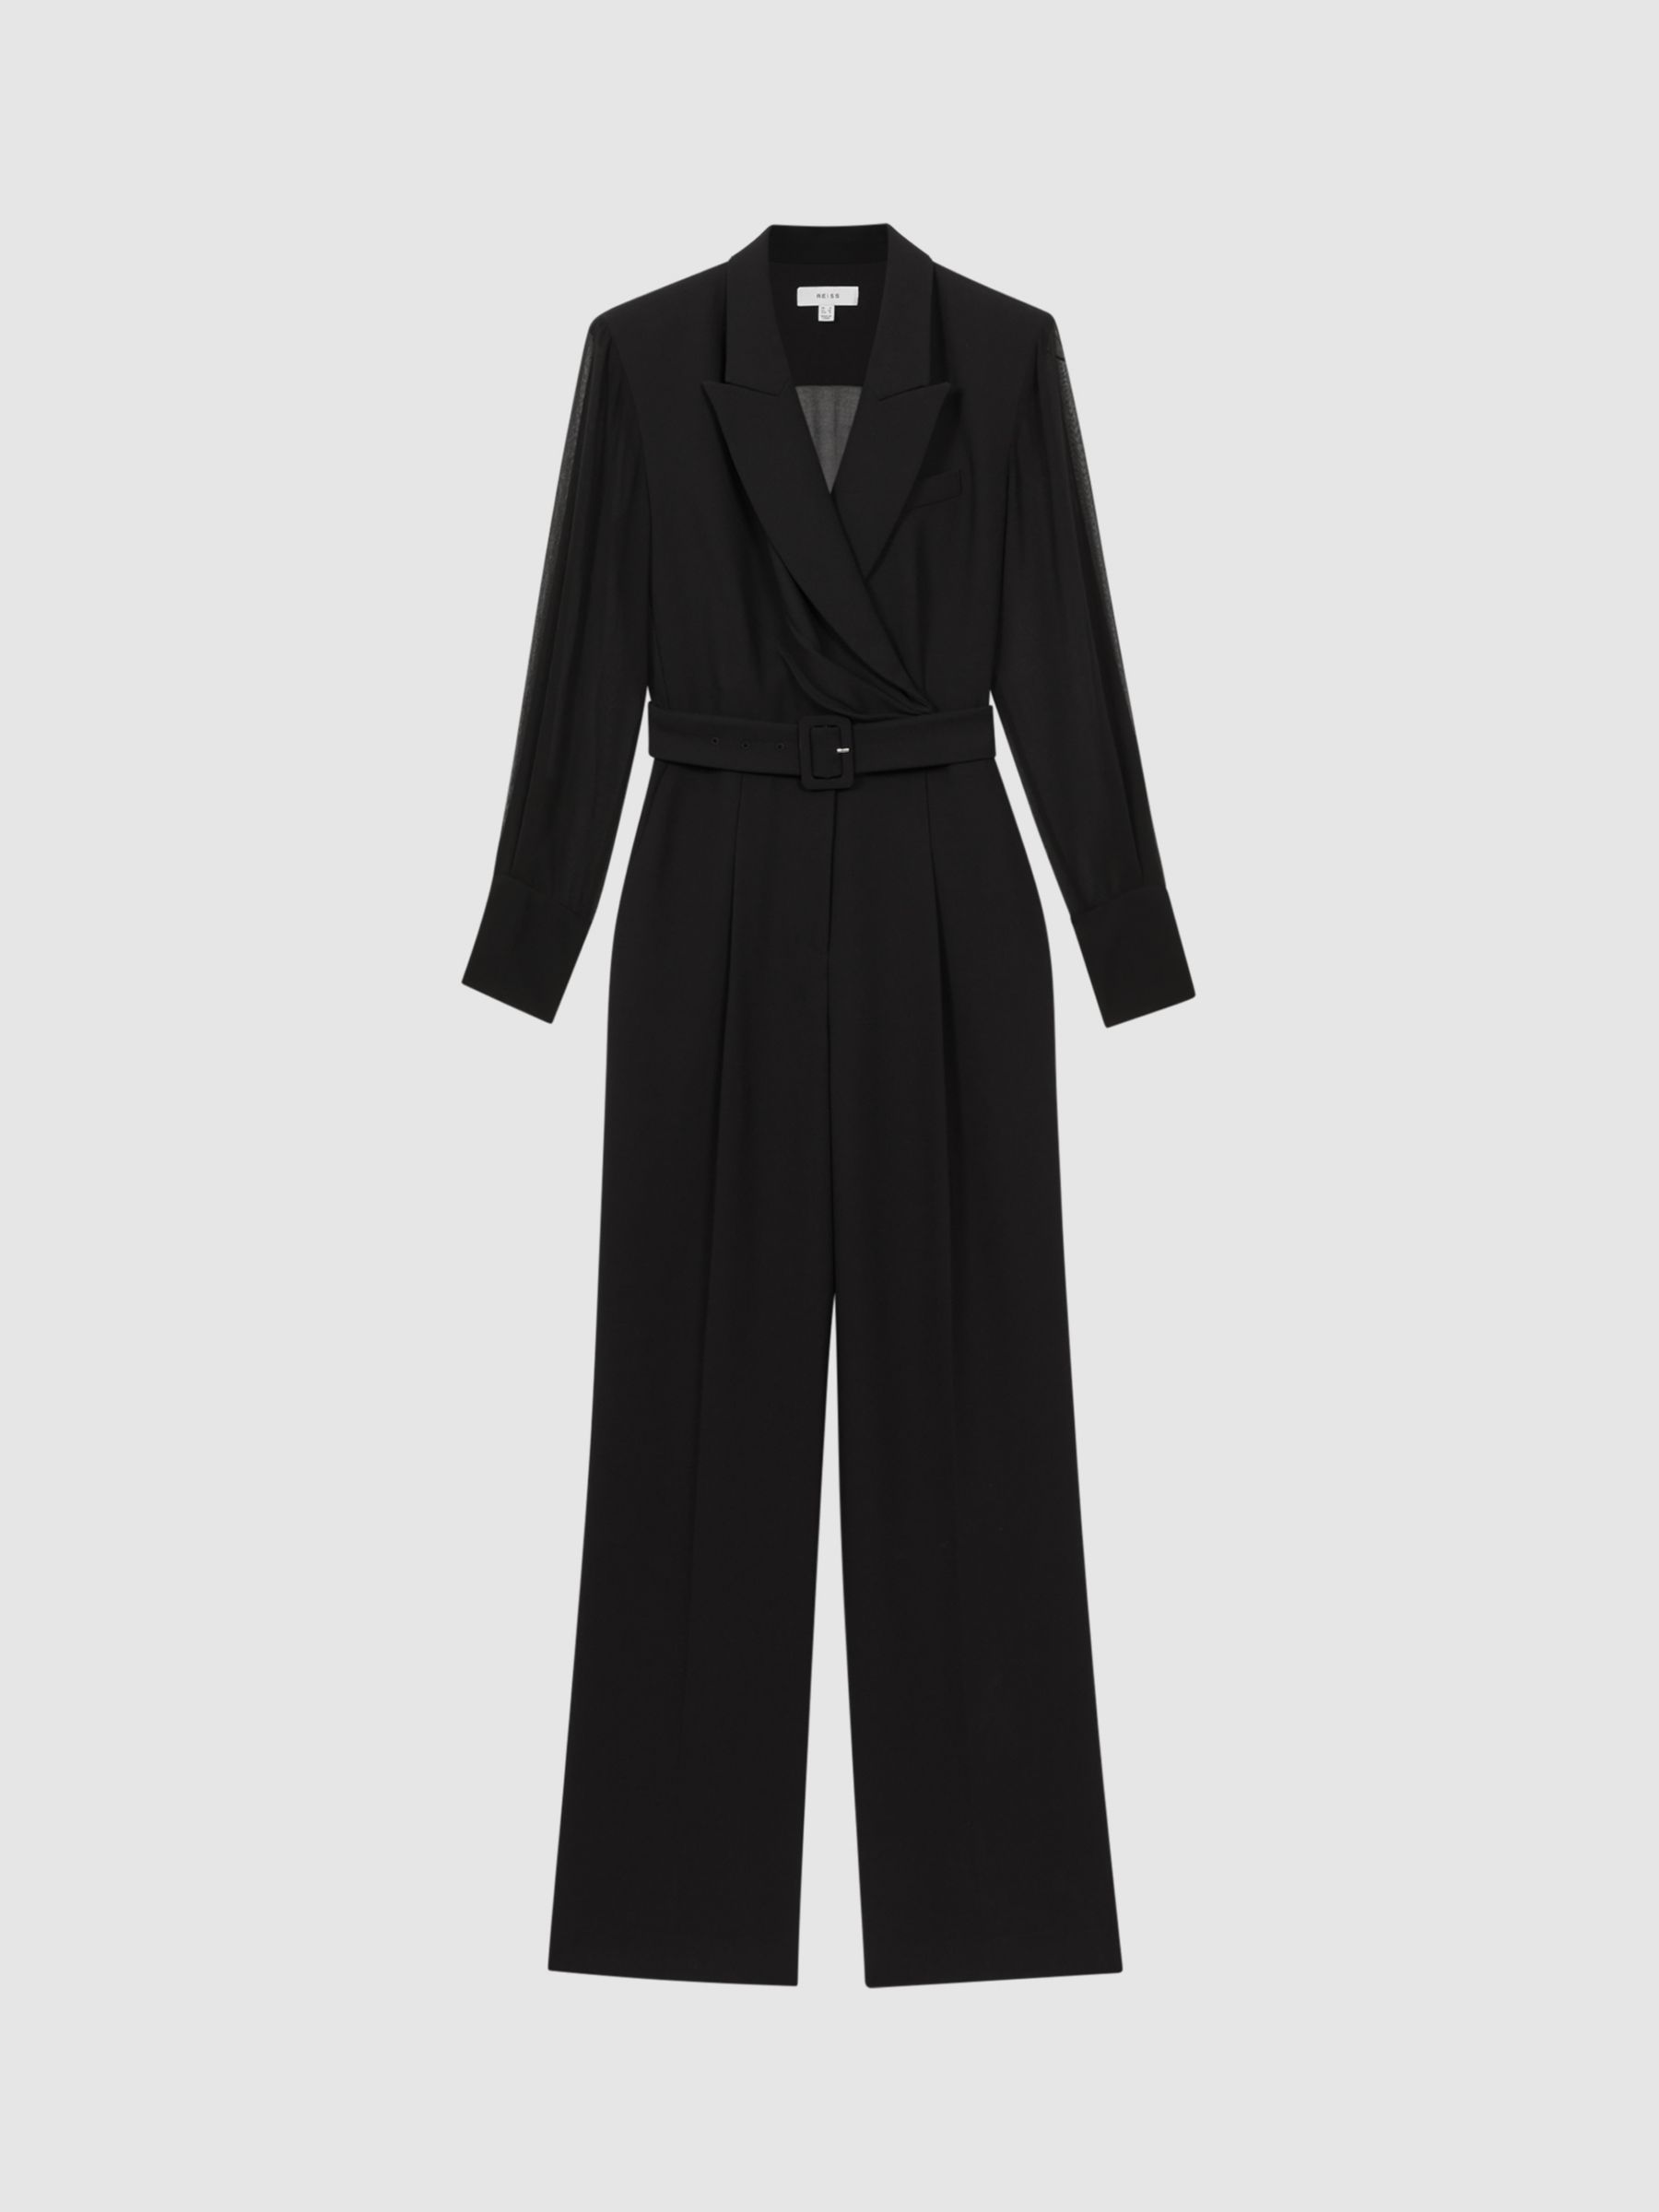 Reiss Flora Sheer Sleeve Belted Jumpsuit, Black, 4